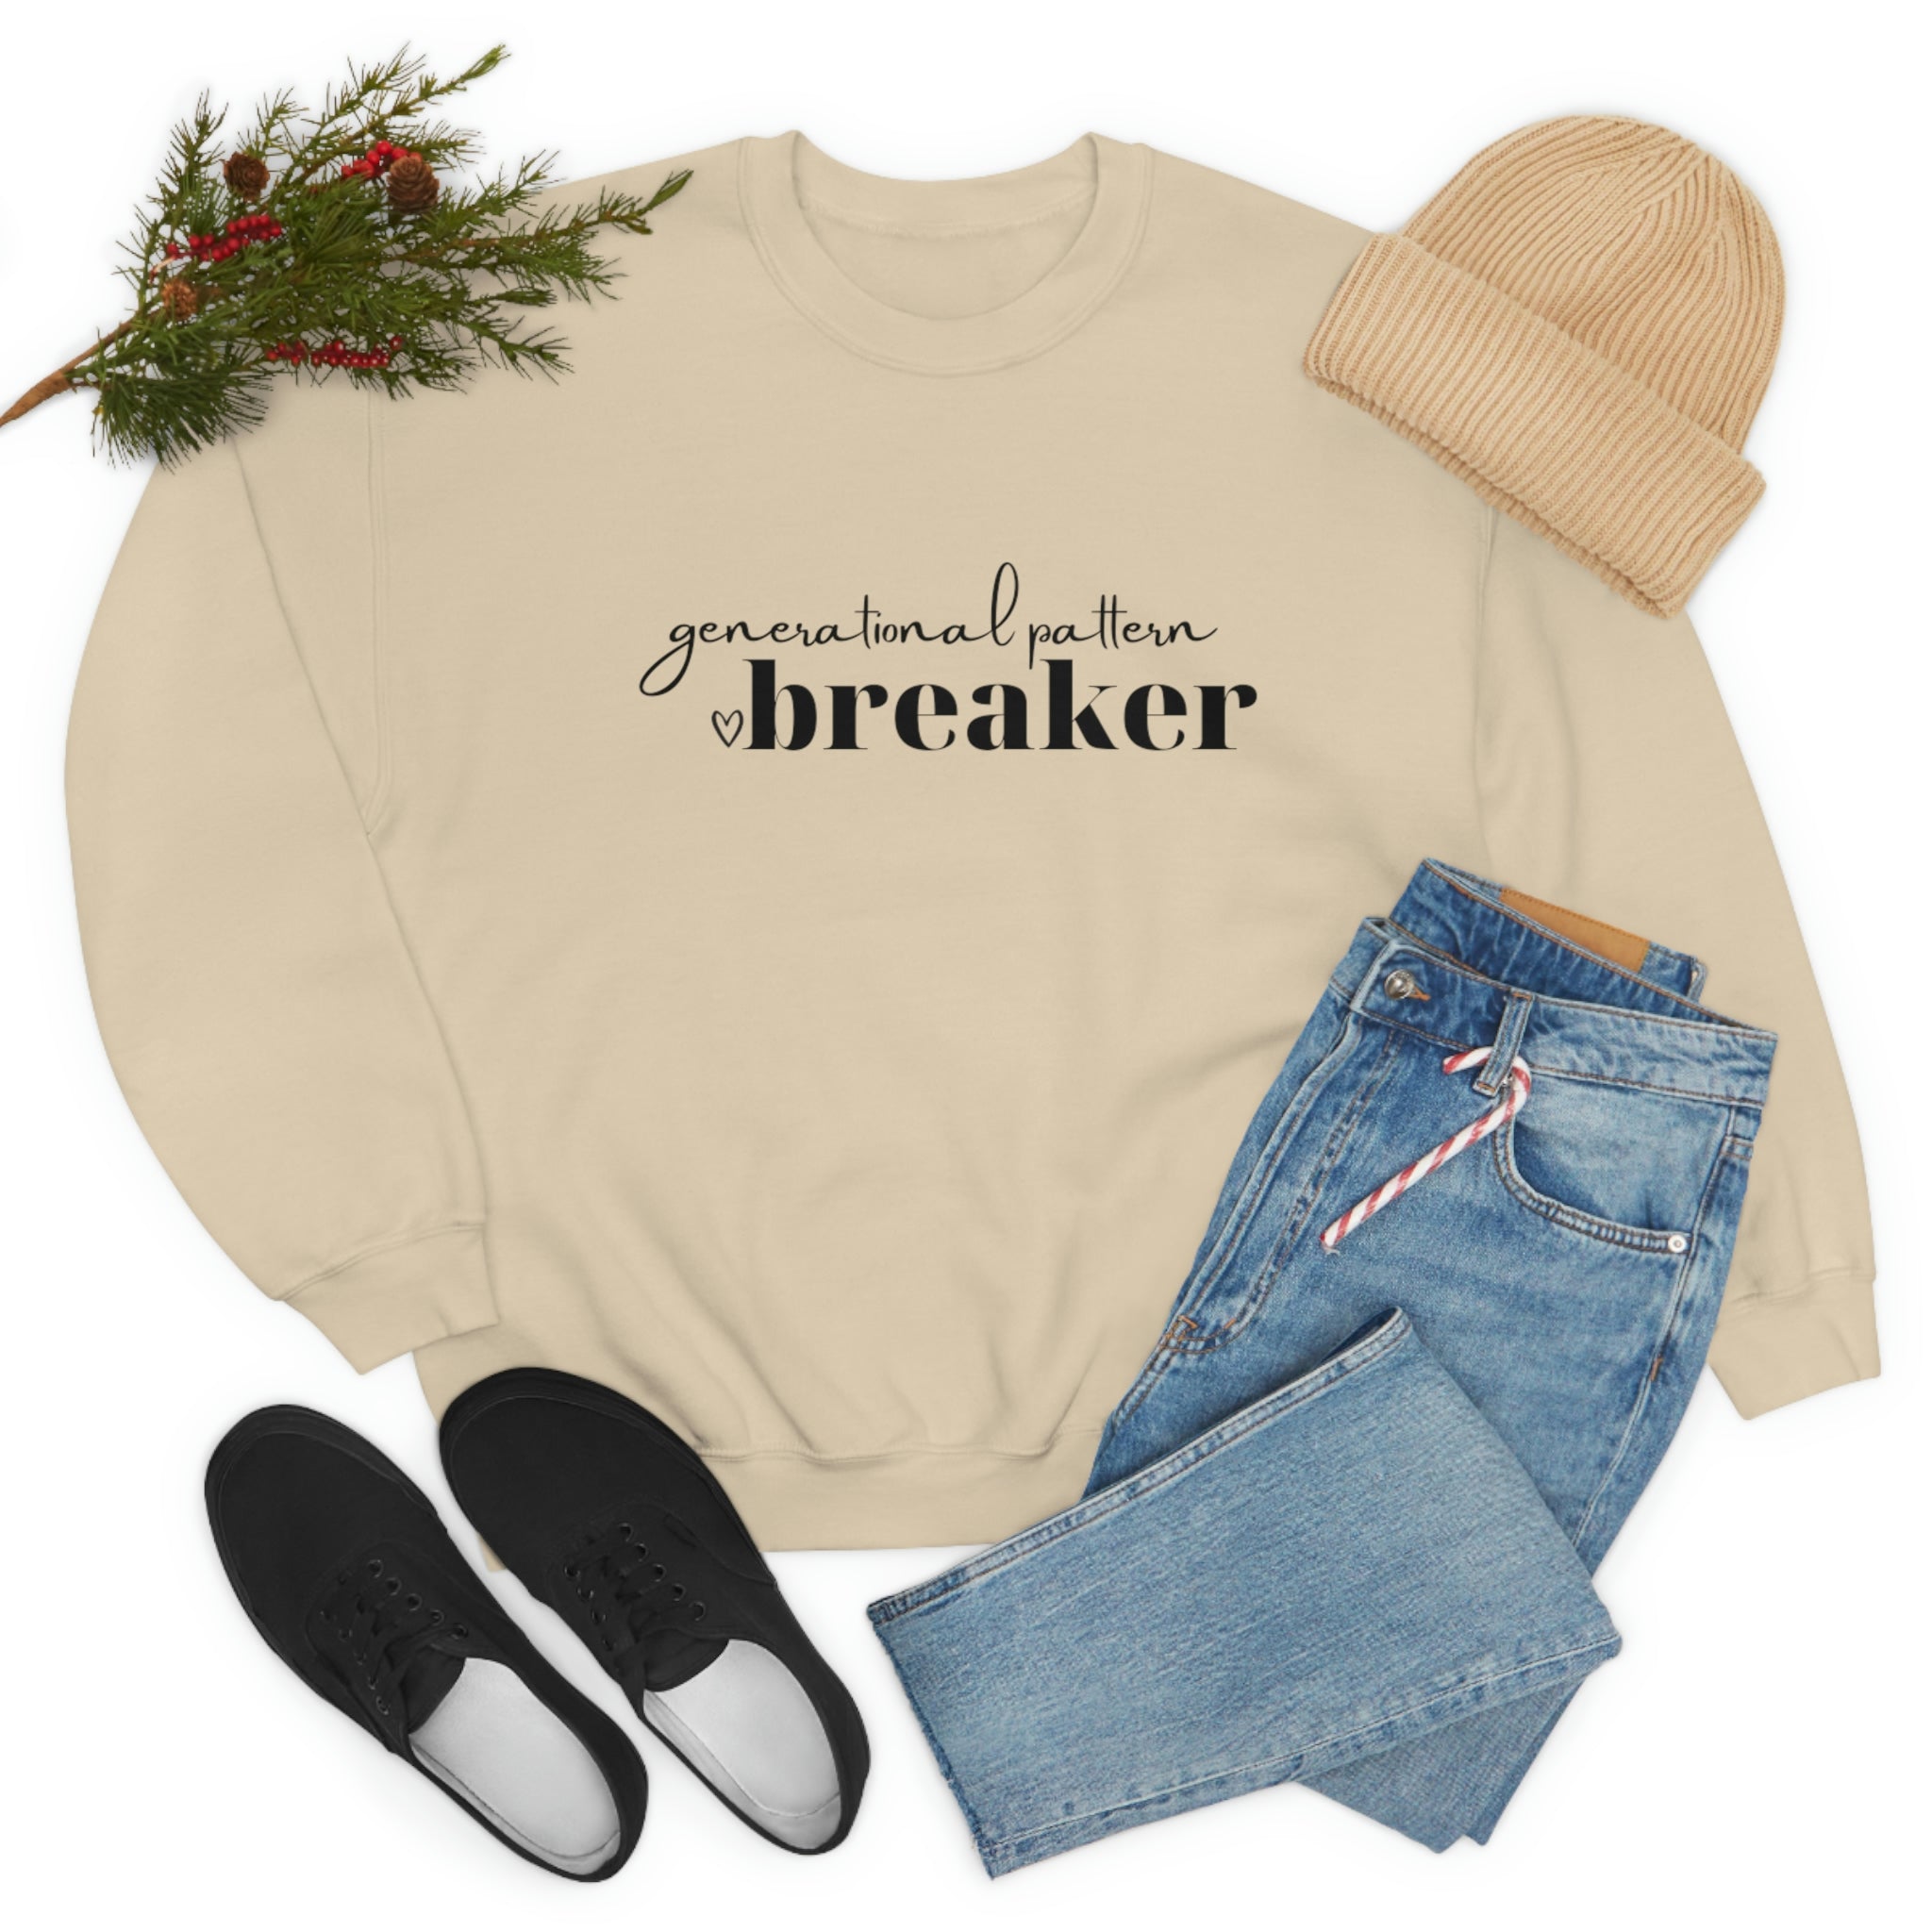 Generational Pattern Breaker Sweatshirt